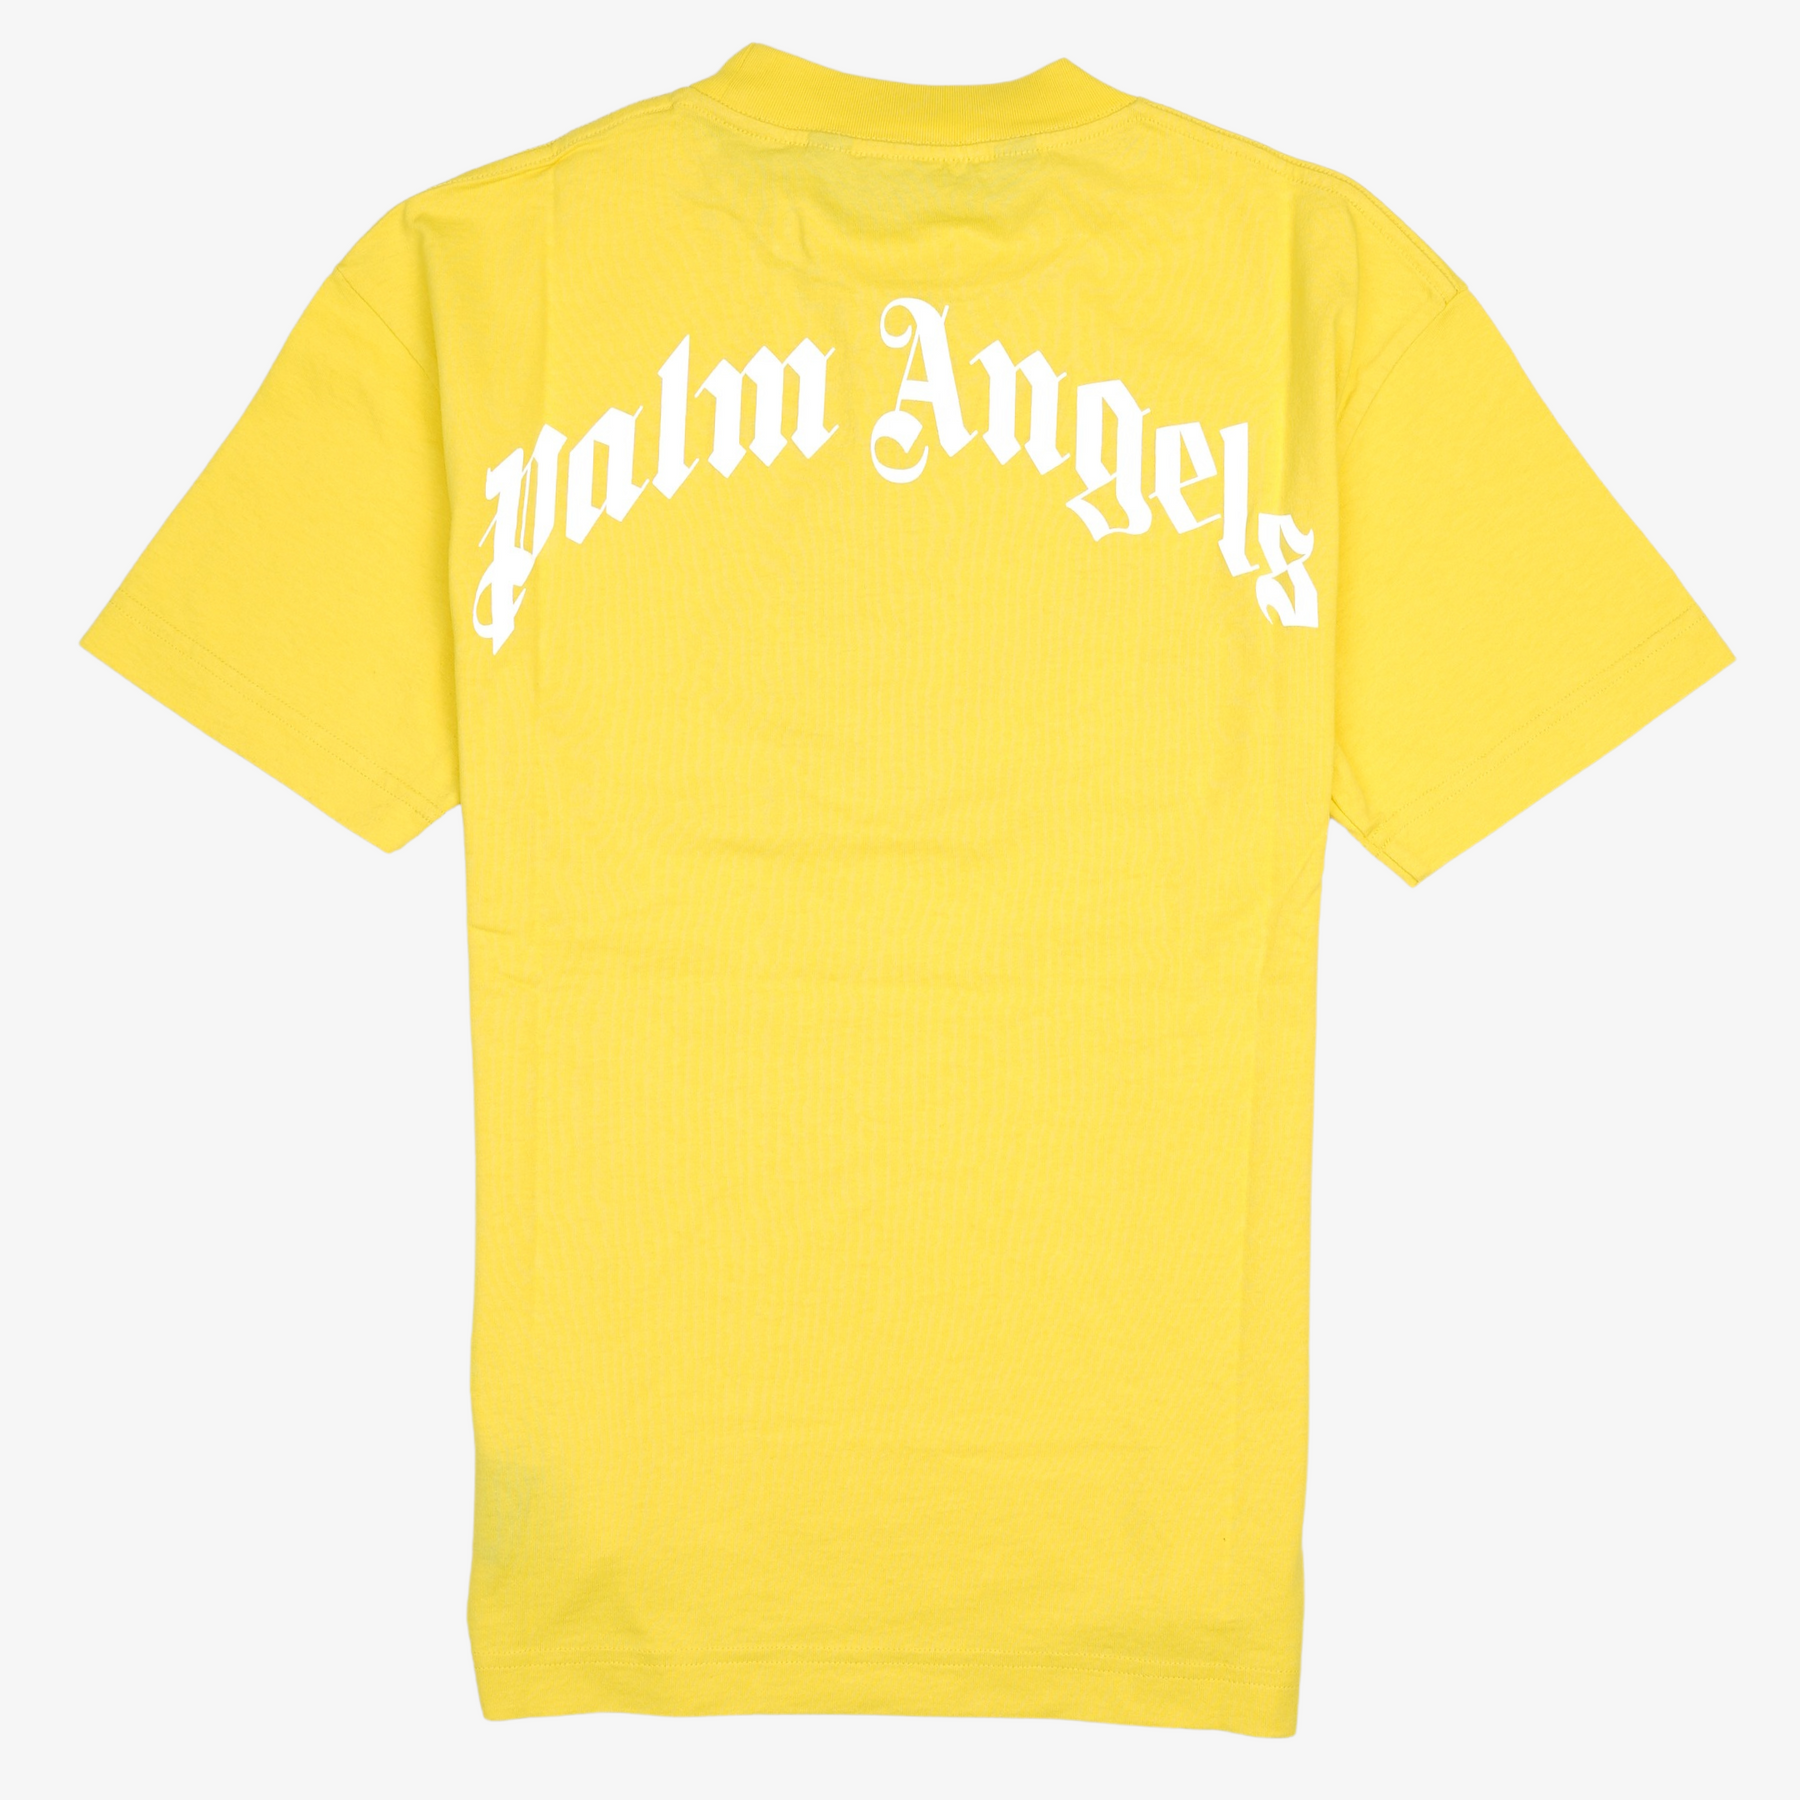 PALM ANGELS, Light yellow Men's T-shirt